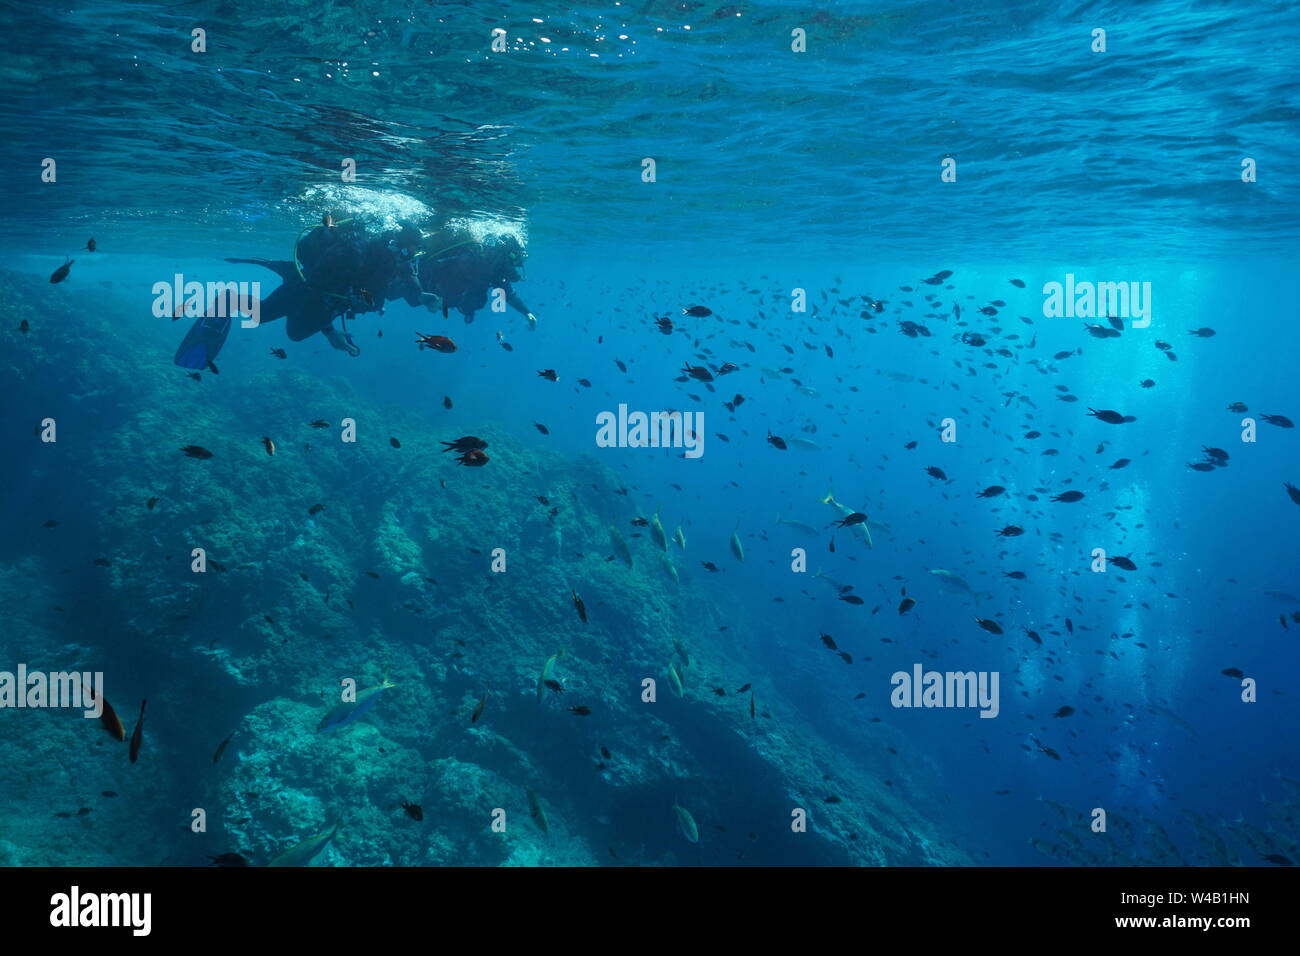 Mar Mediterráneo buceo, pareja de buceadores en la superficie del agua mirar cardumen de peces bajo el agua, Costa Brava, ESPAÑA Foto de stock